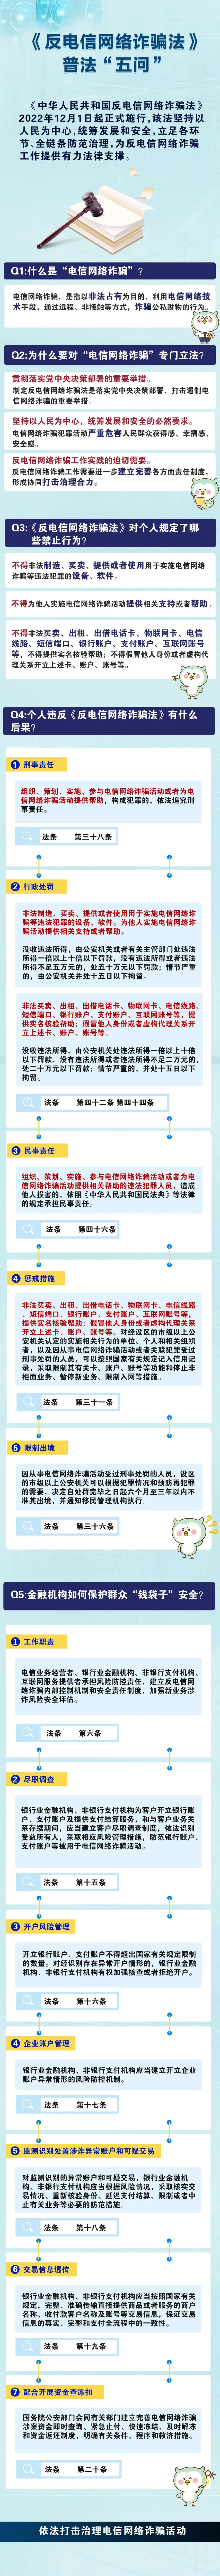 《反电信网络诈骗法》普法“五问”.jpg